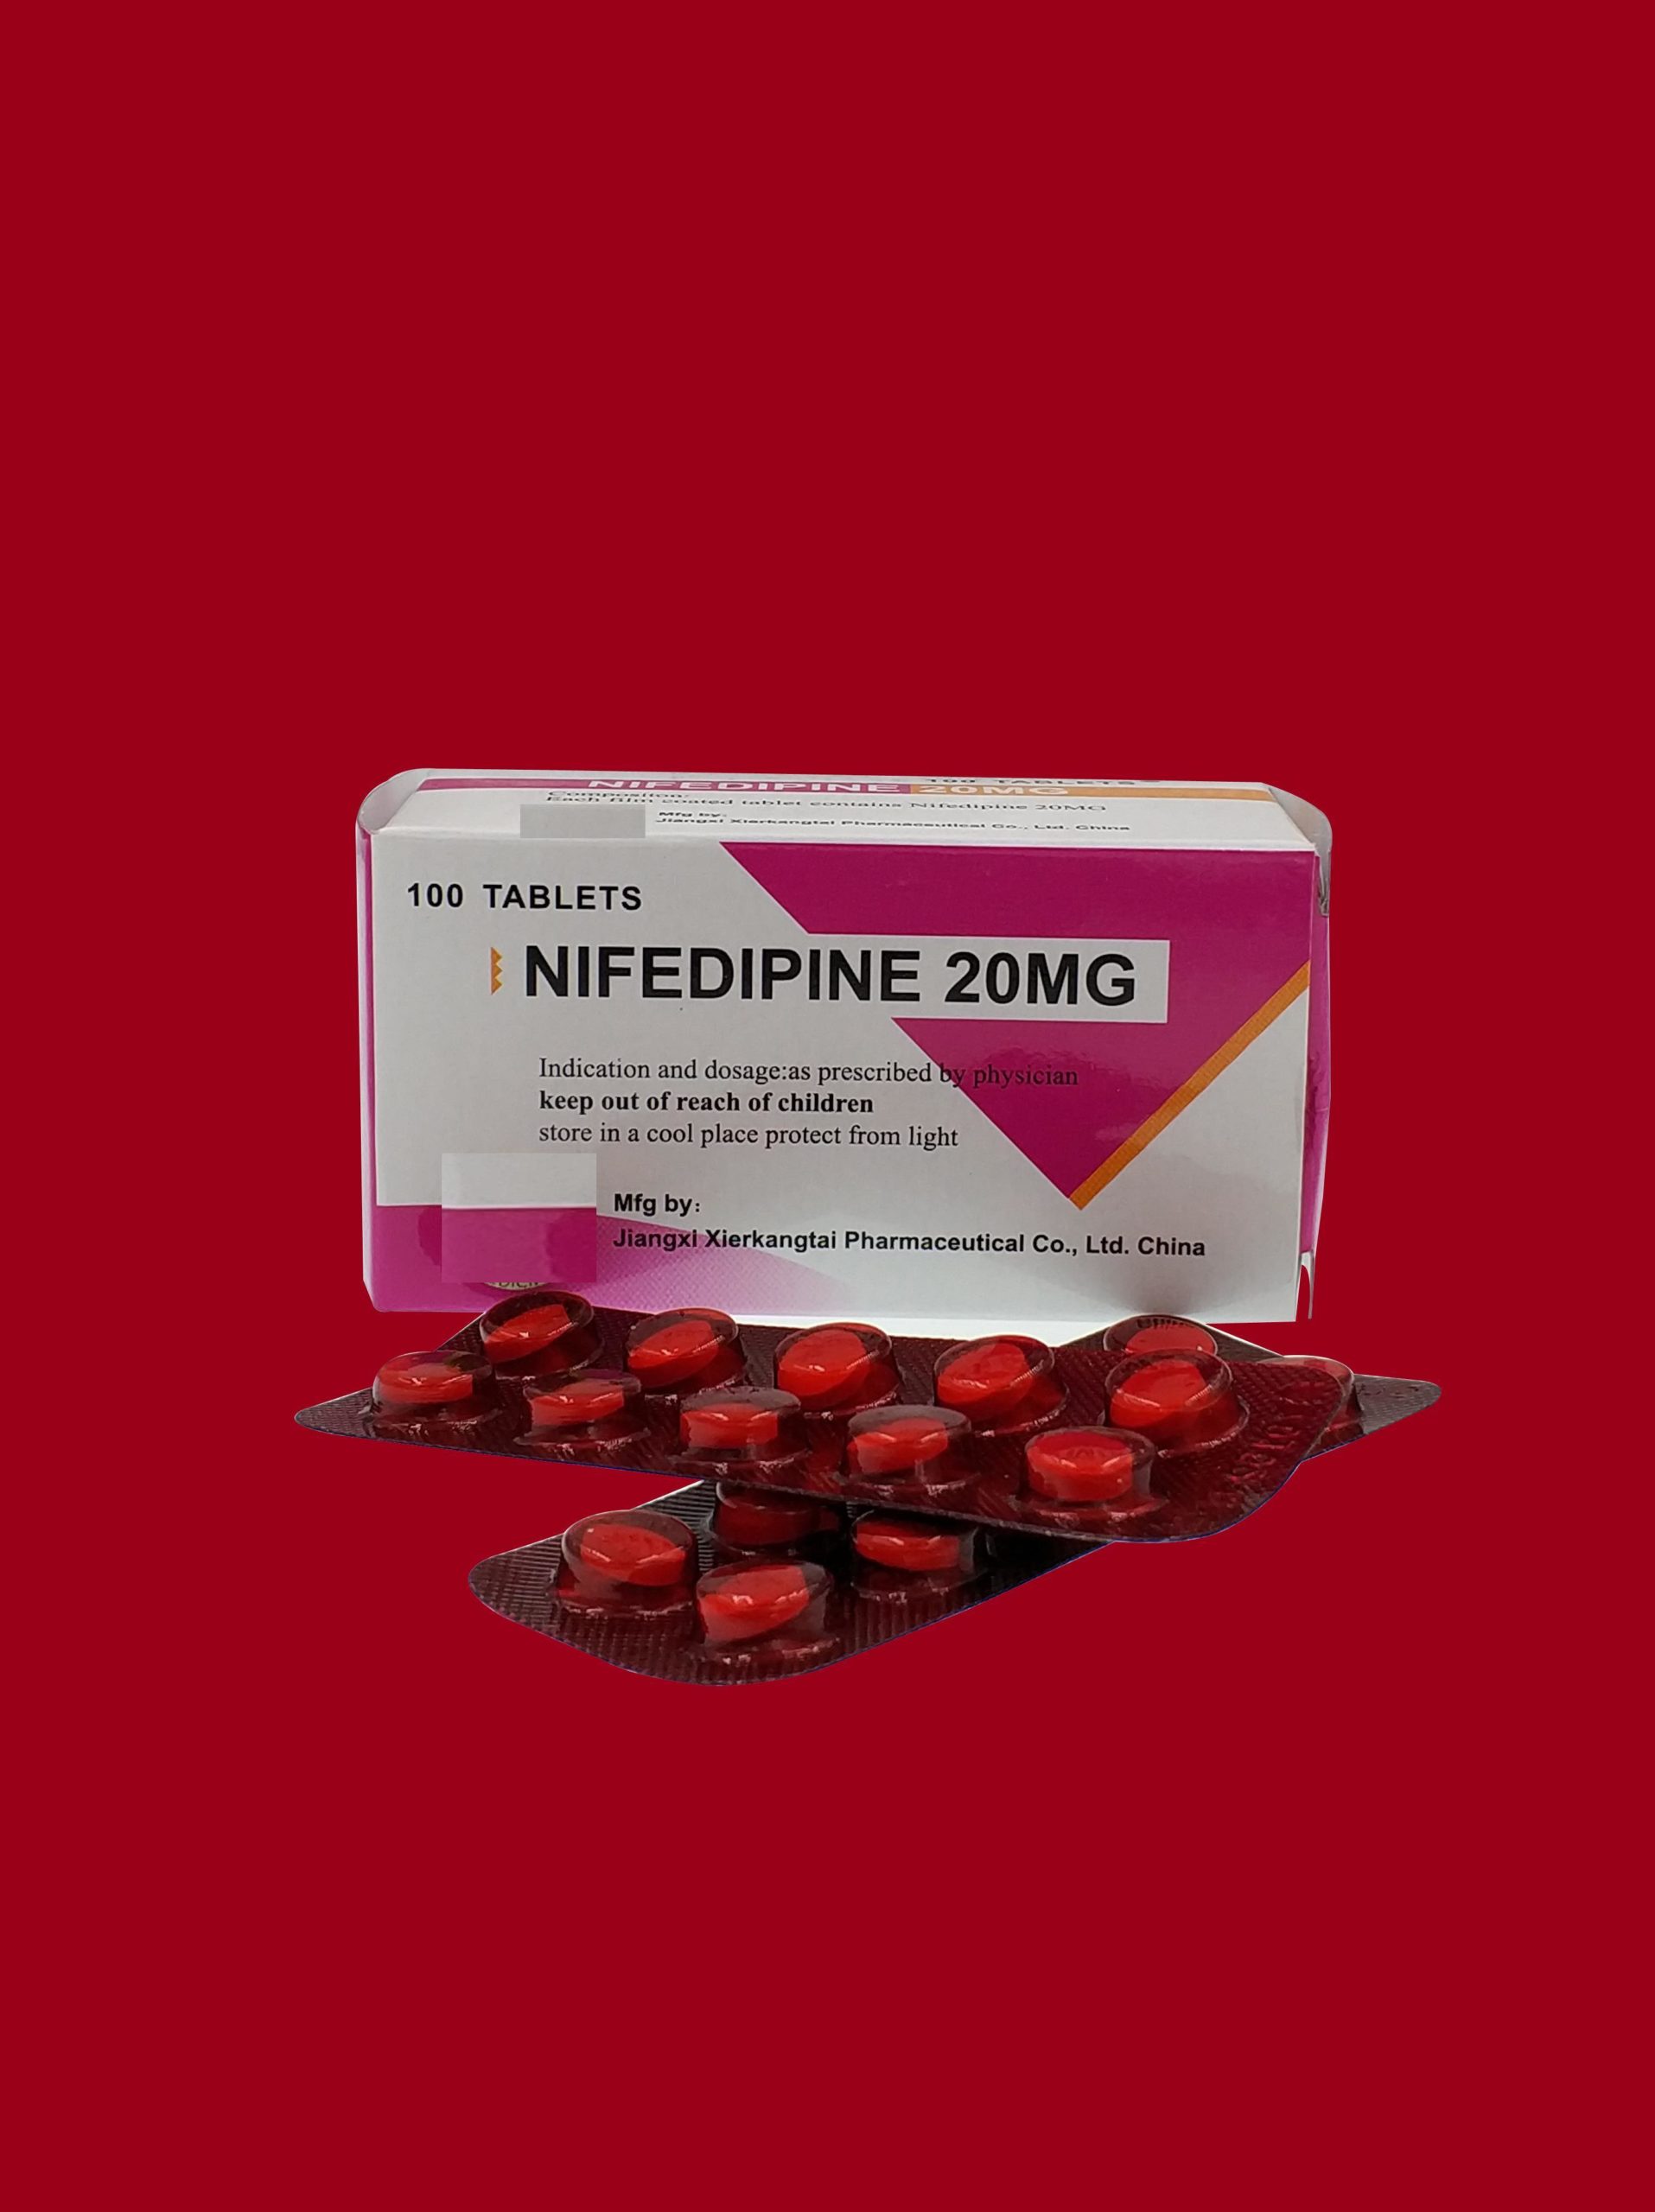 دواء نيفيديبين: الاستخدامات والجرعات والتأثيرات الجانبية والتحذيرات - دواء لعلاج ارتفاع الضغط الدموي والذبحة الصدرية - حاصرات أقنية الكالسيوم